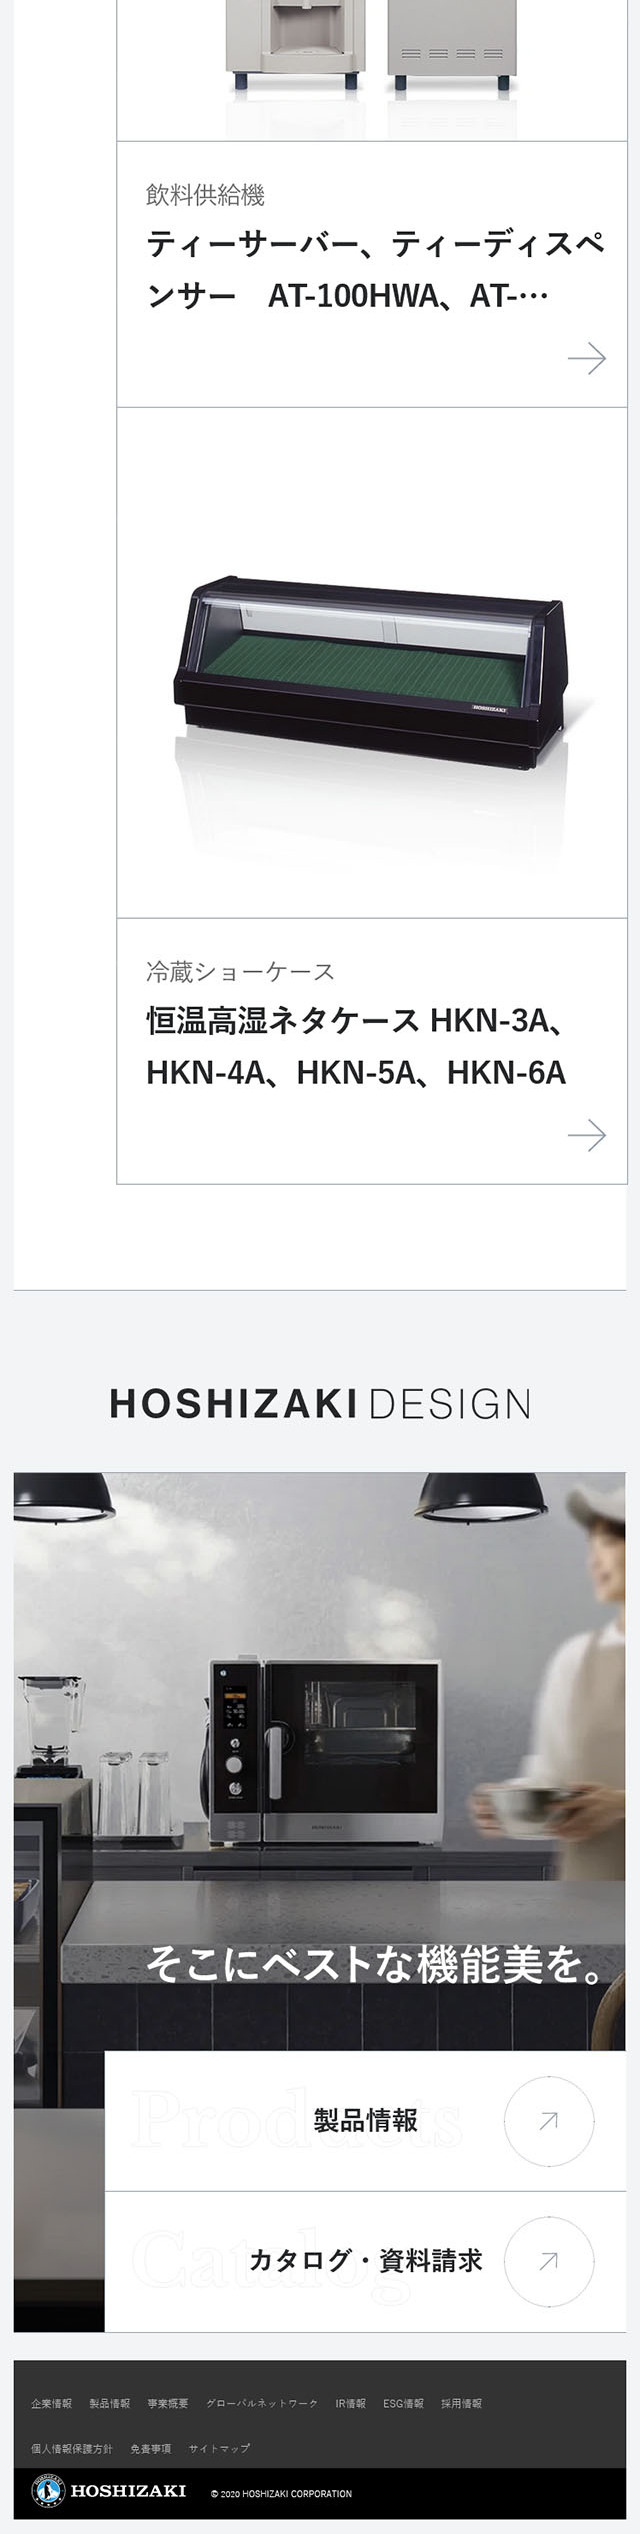 HOSHIZAKI DESIGN_sp_2